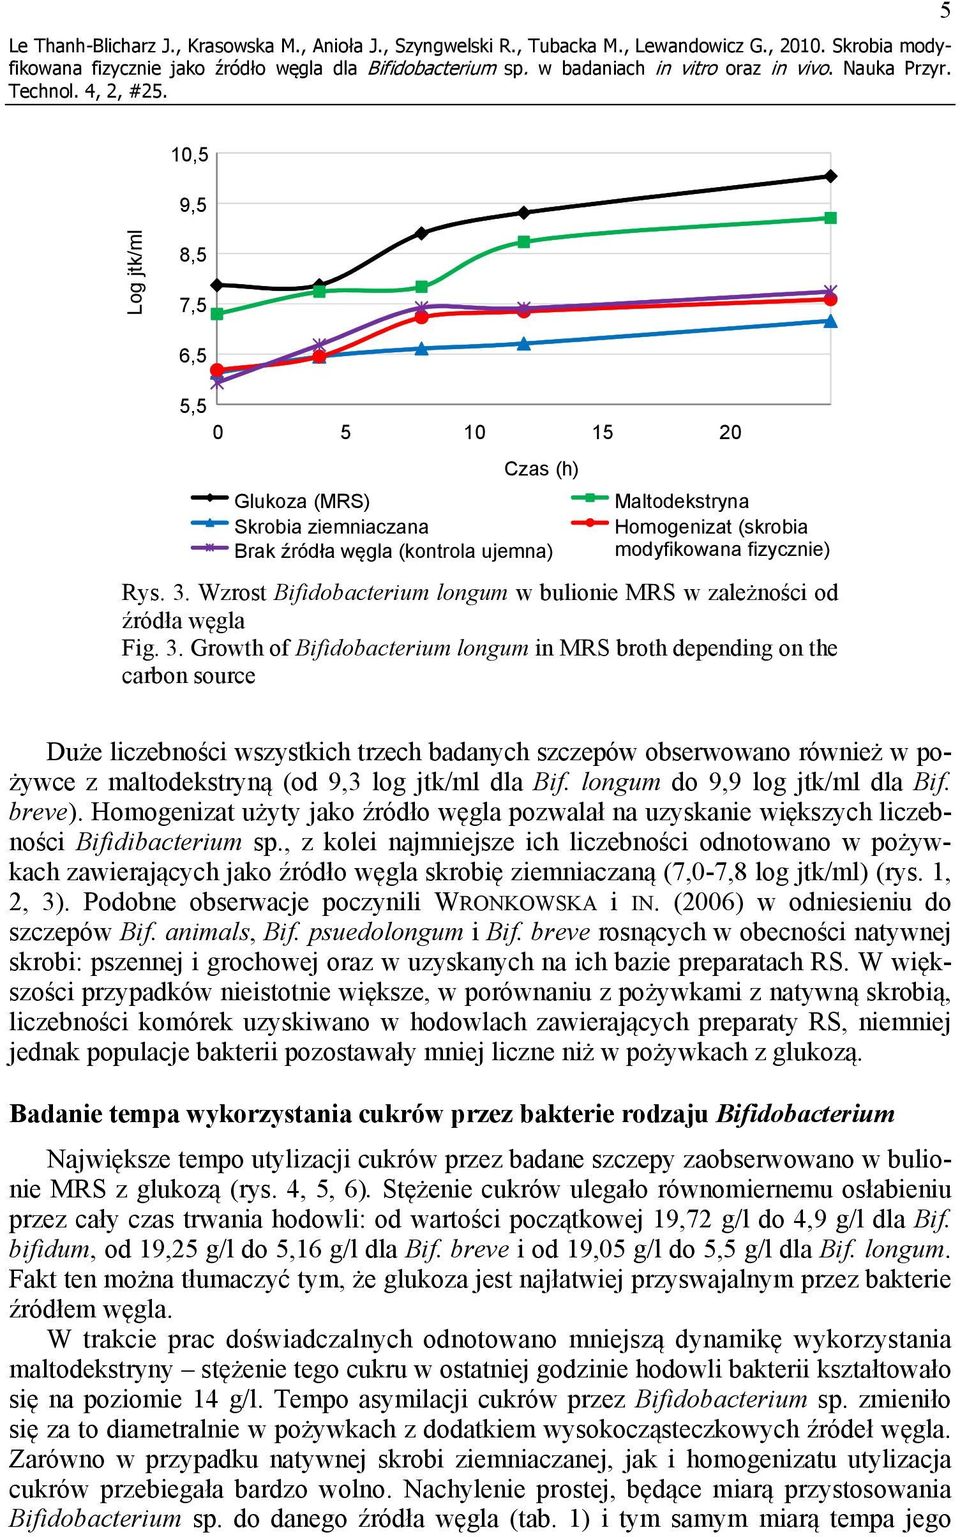 Wzrost Bifidobacterium longum w bulionie MRS w zależności od źródła węgla Fig. 3.